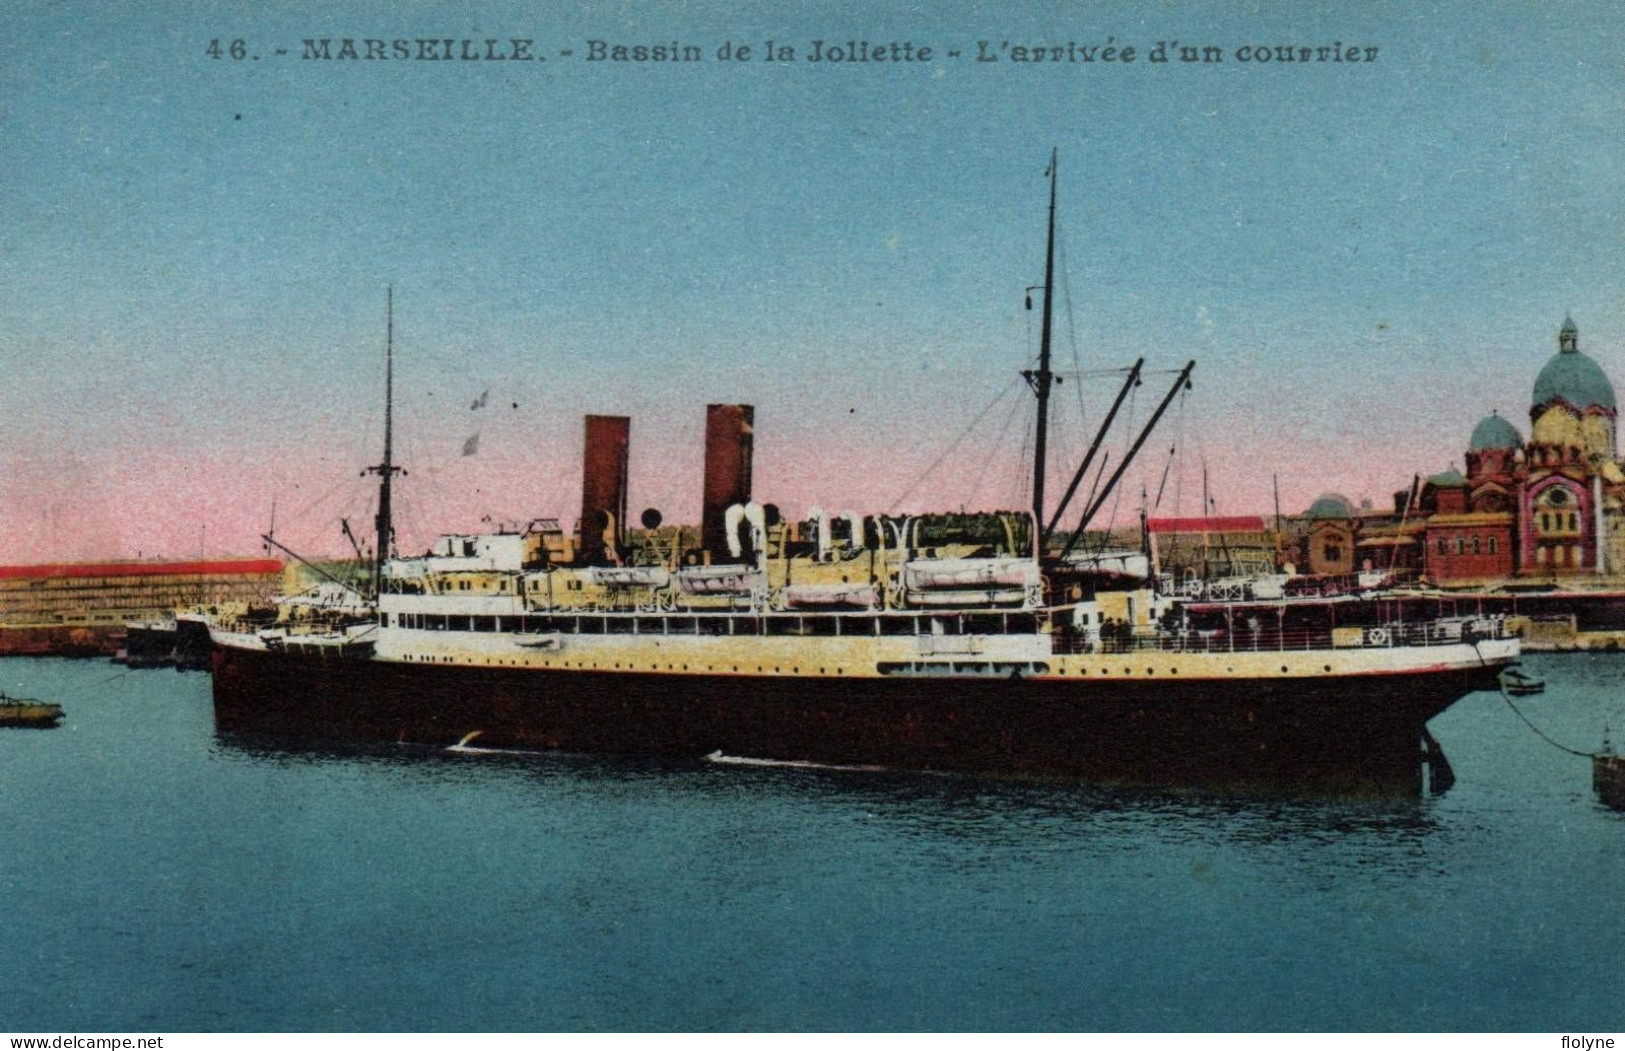 Marseille - Bassin De La Joliette - L'arrivée D'un Courrier - Bateau - Joliette, Port Area